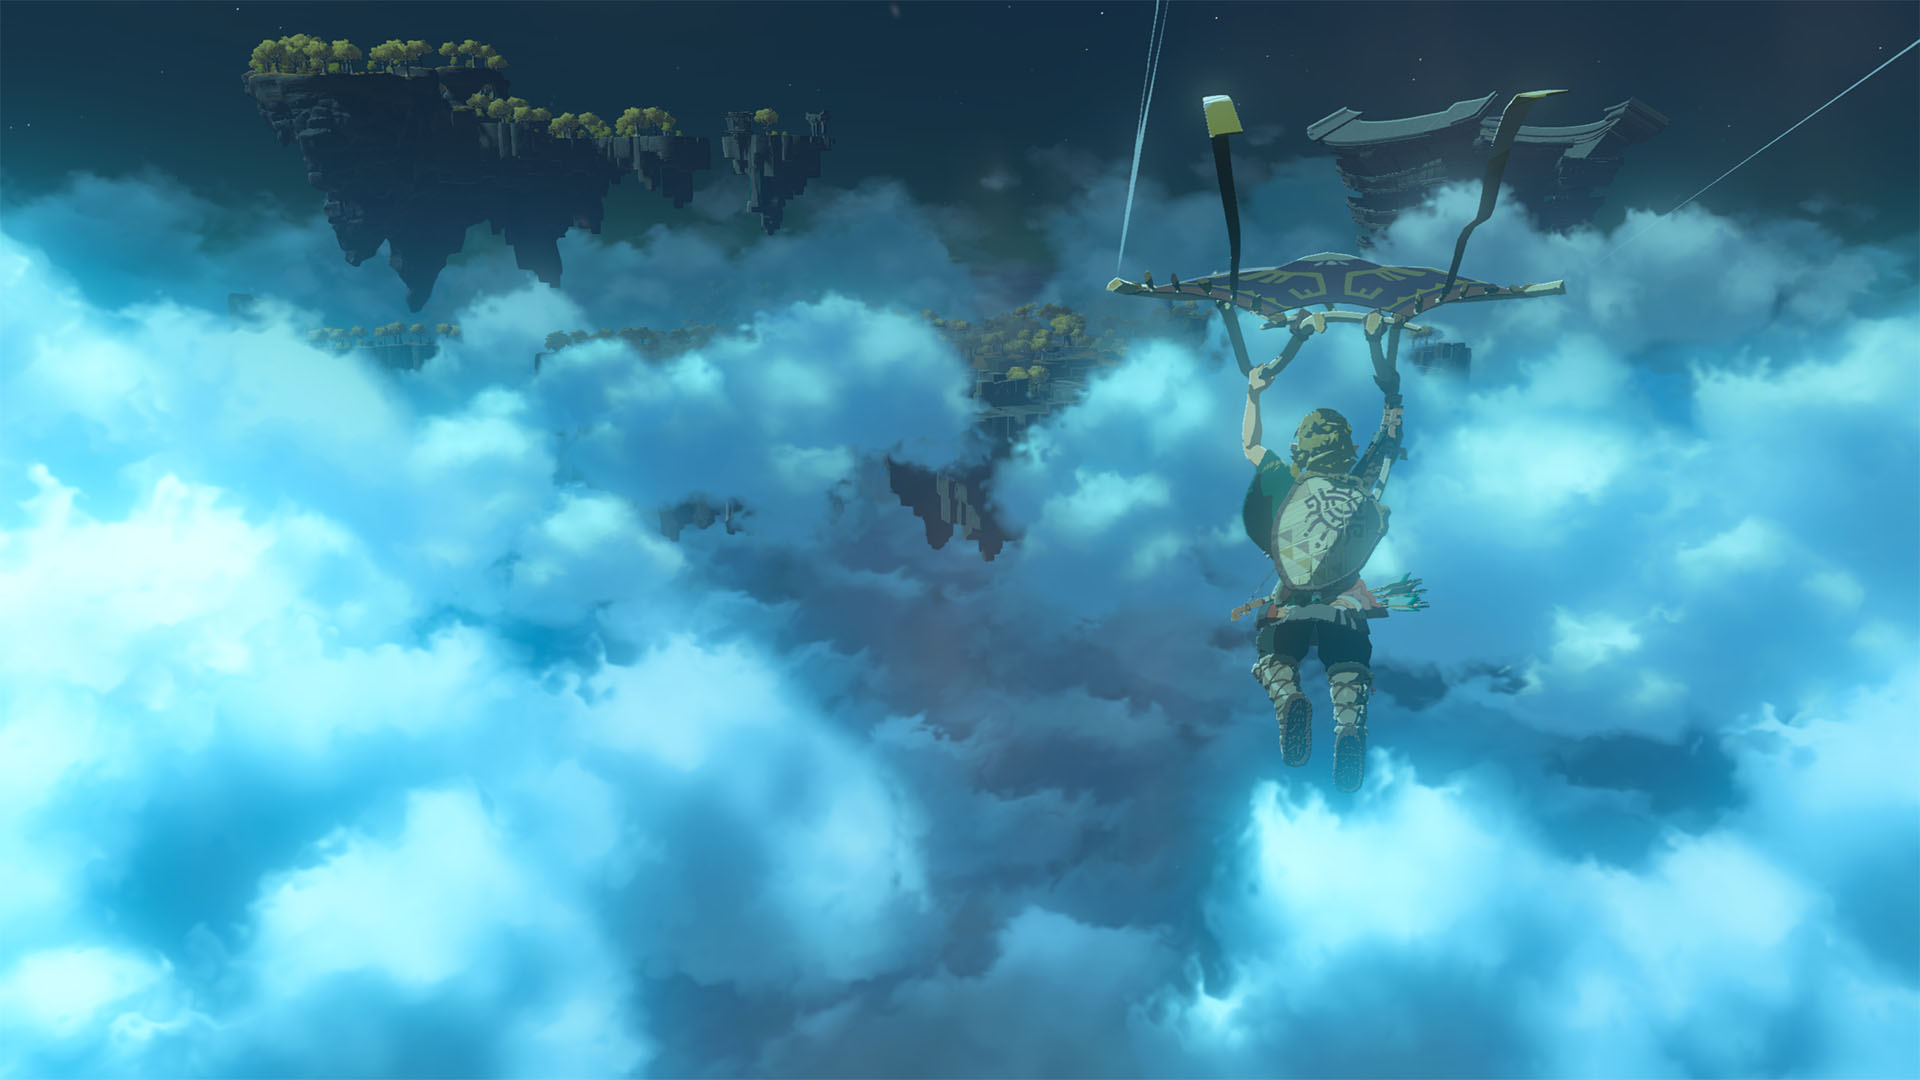 Link parapente pelas nuvens sobre Hyrule